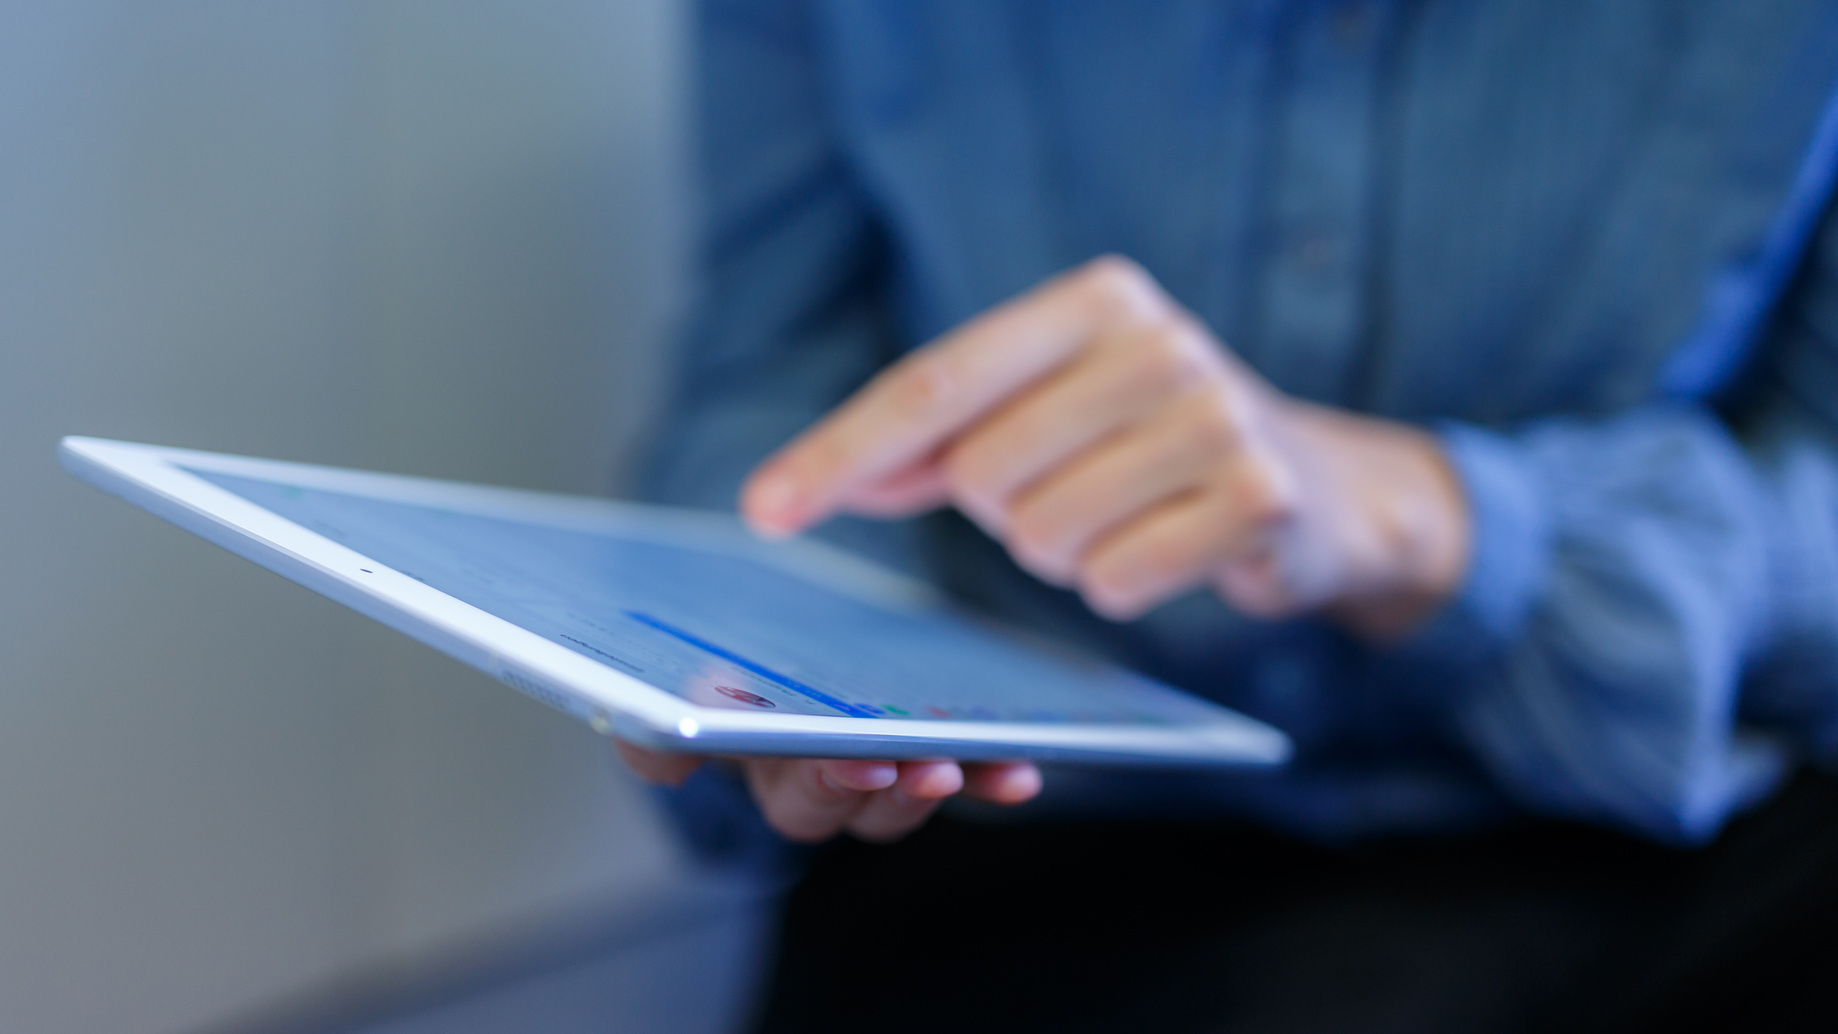 iPad : il est désormais possible d'utiliser plusieurs apps en même temps. © Philippe Ramakers, fotolia